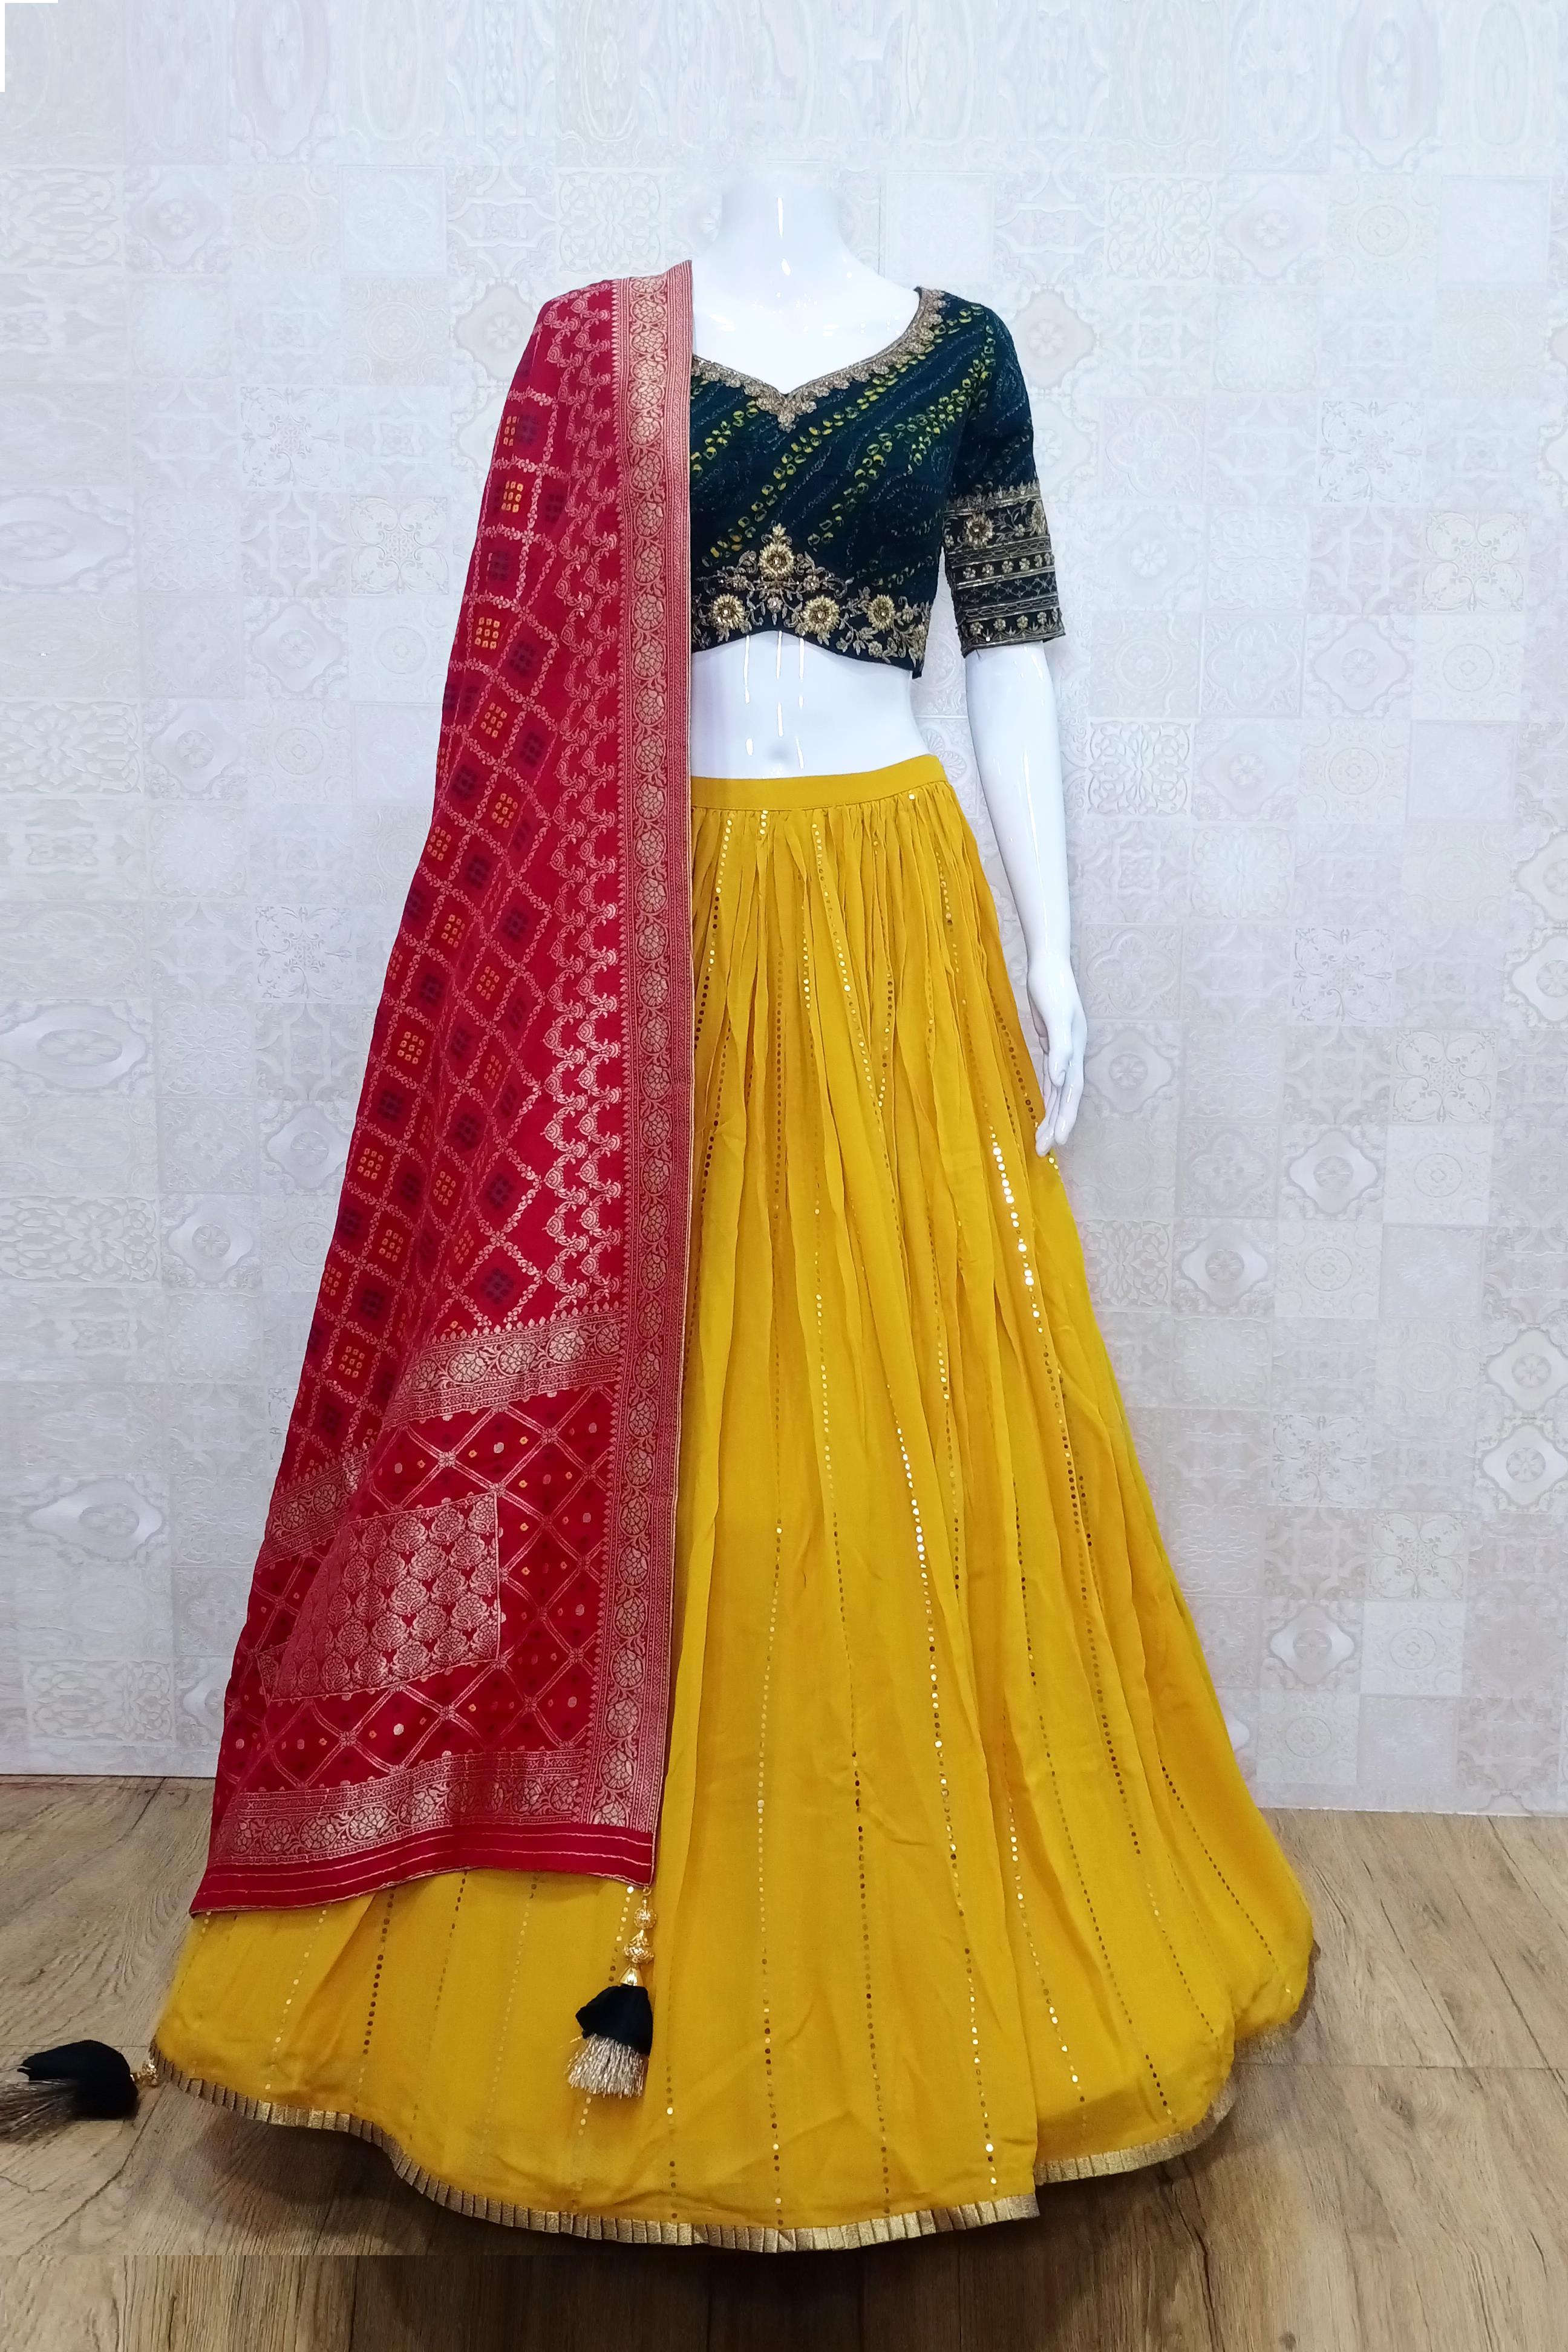 Bhavana Sirpa in a silk lehenga – South India Fashion